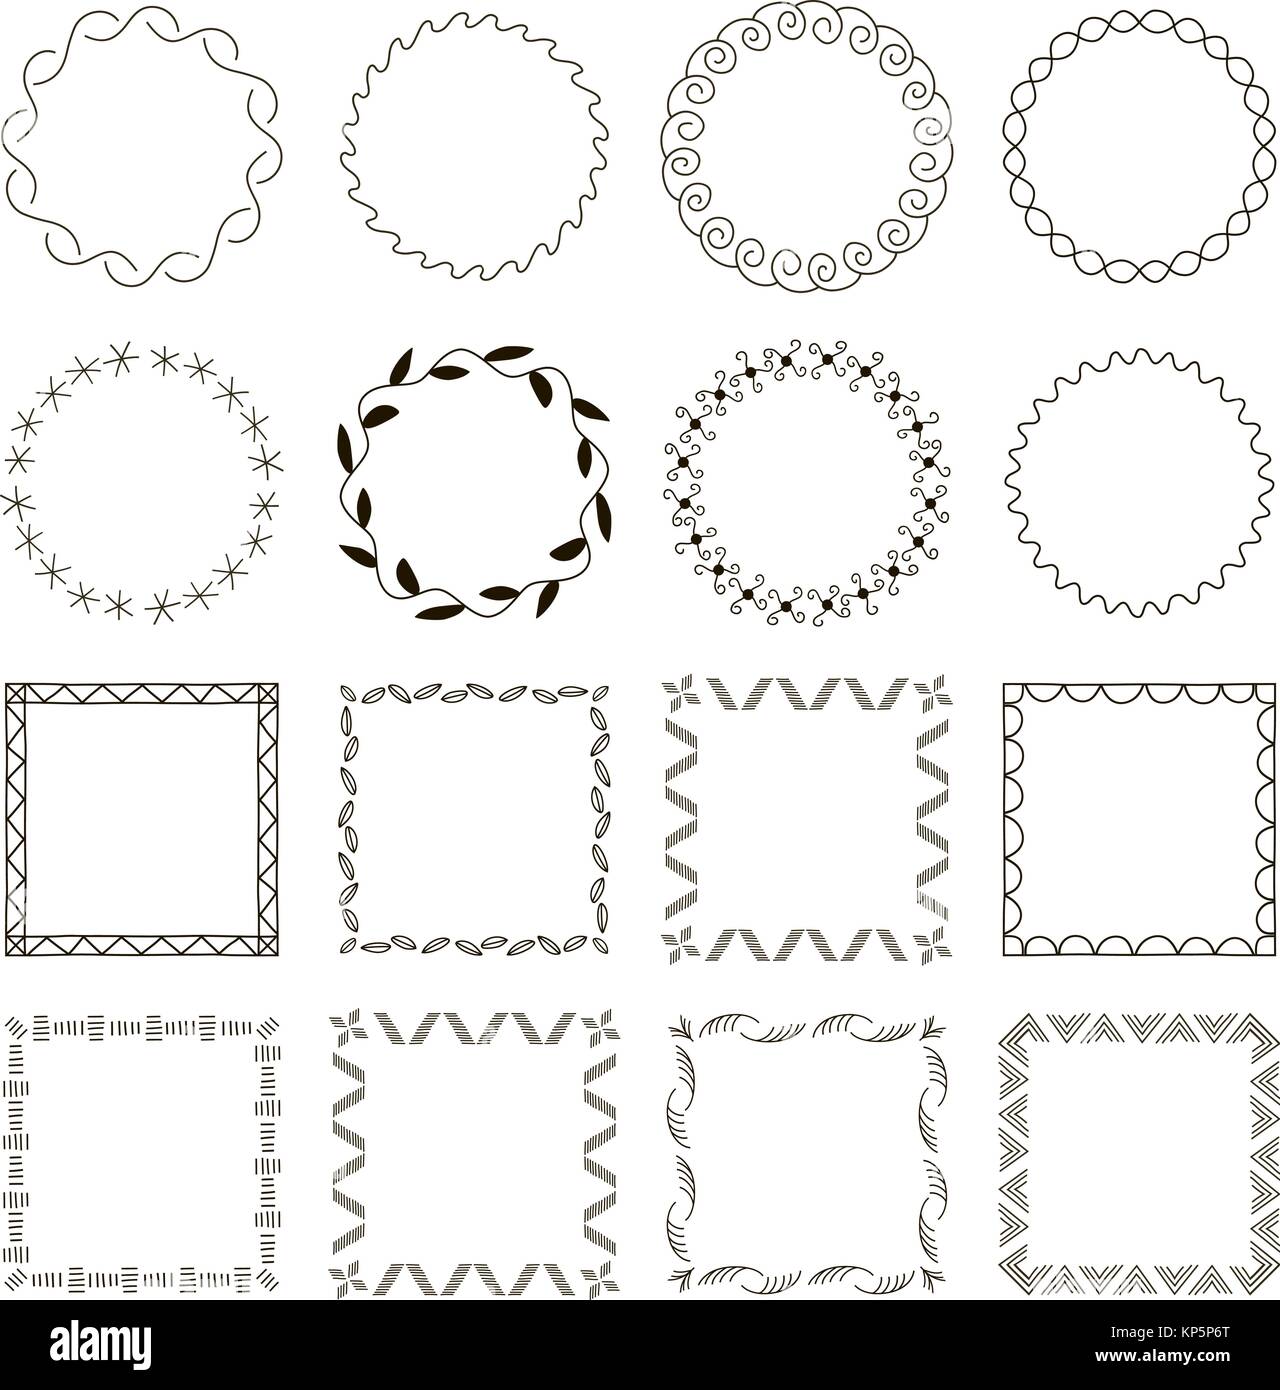 Ensemble de 16 cadres géométriques simples abstraites. Des formes rondes et carrées Illustration de Vecteur